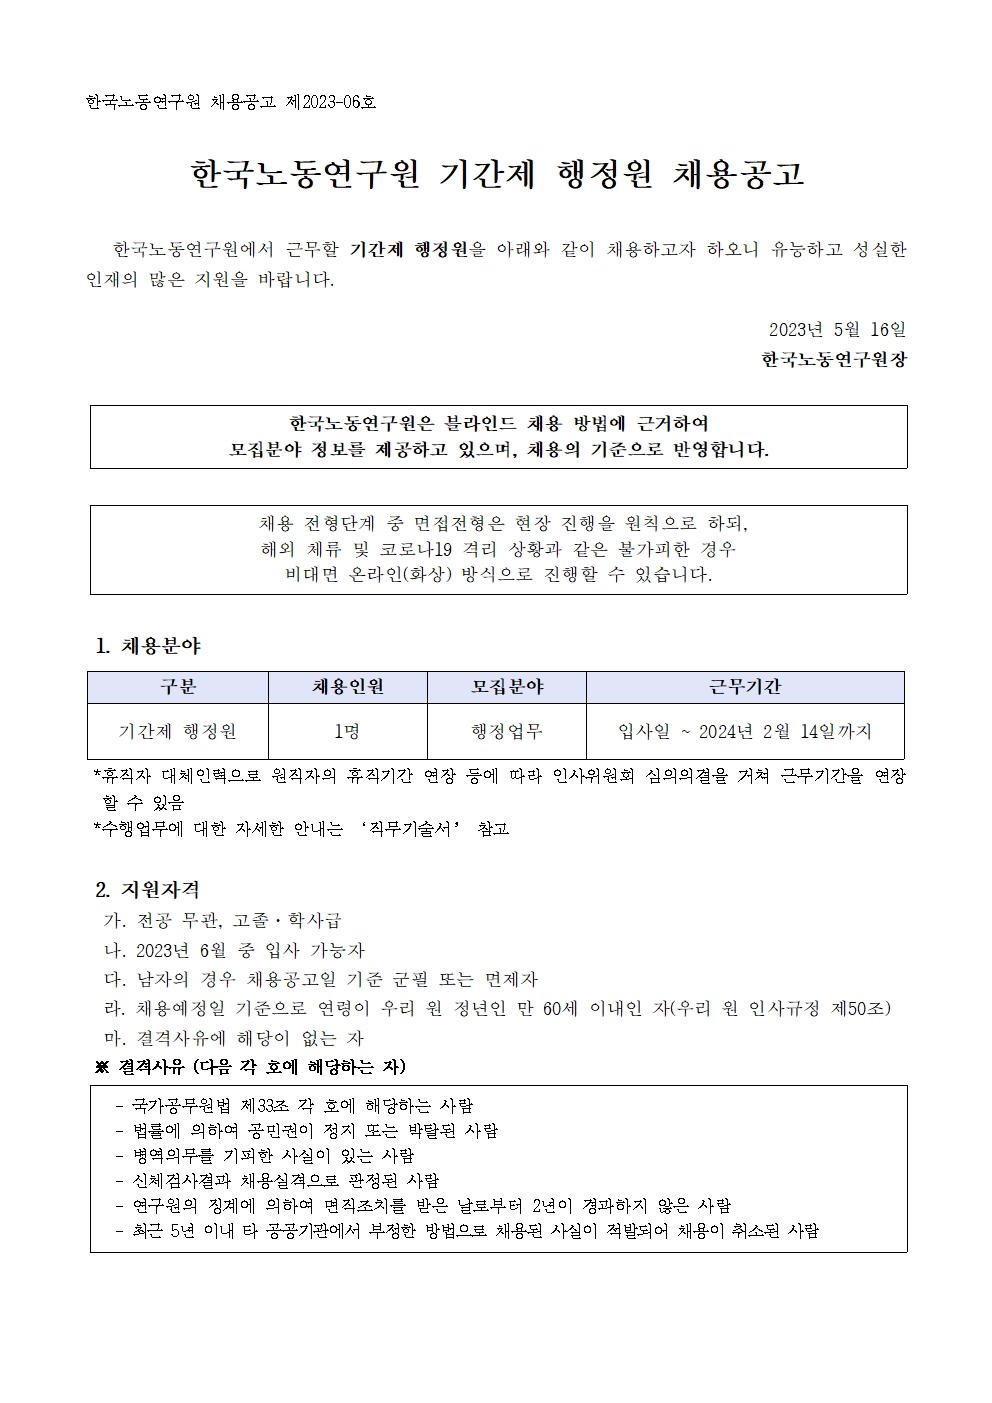 (1/3) 한국노동연구원 기간제 행정원 채용 공고 - 자세한 내용은 하단 참조